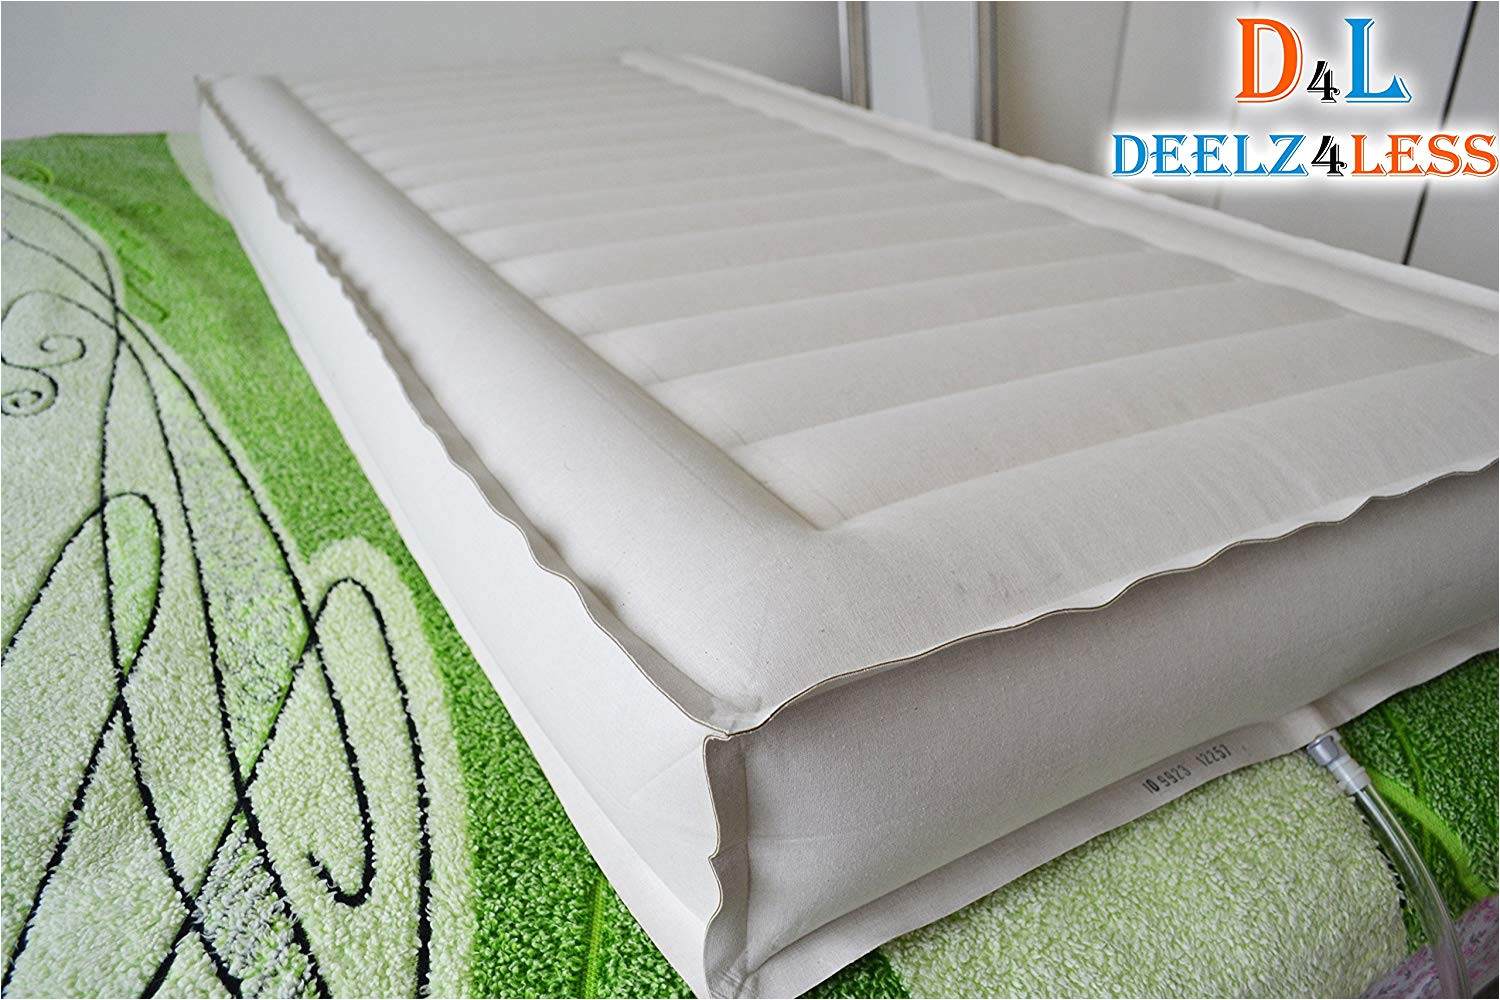 sleep number air mattress replacement